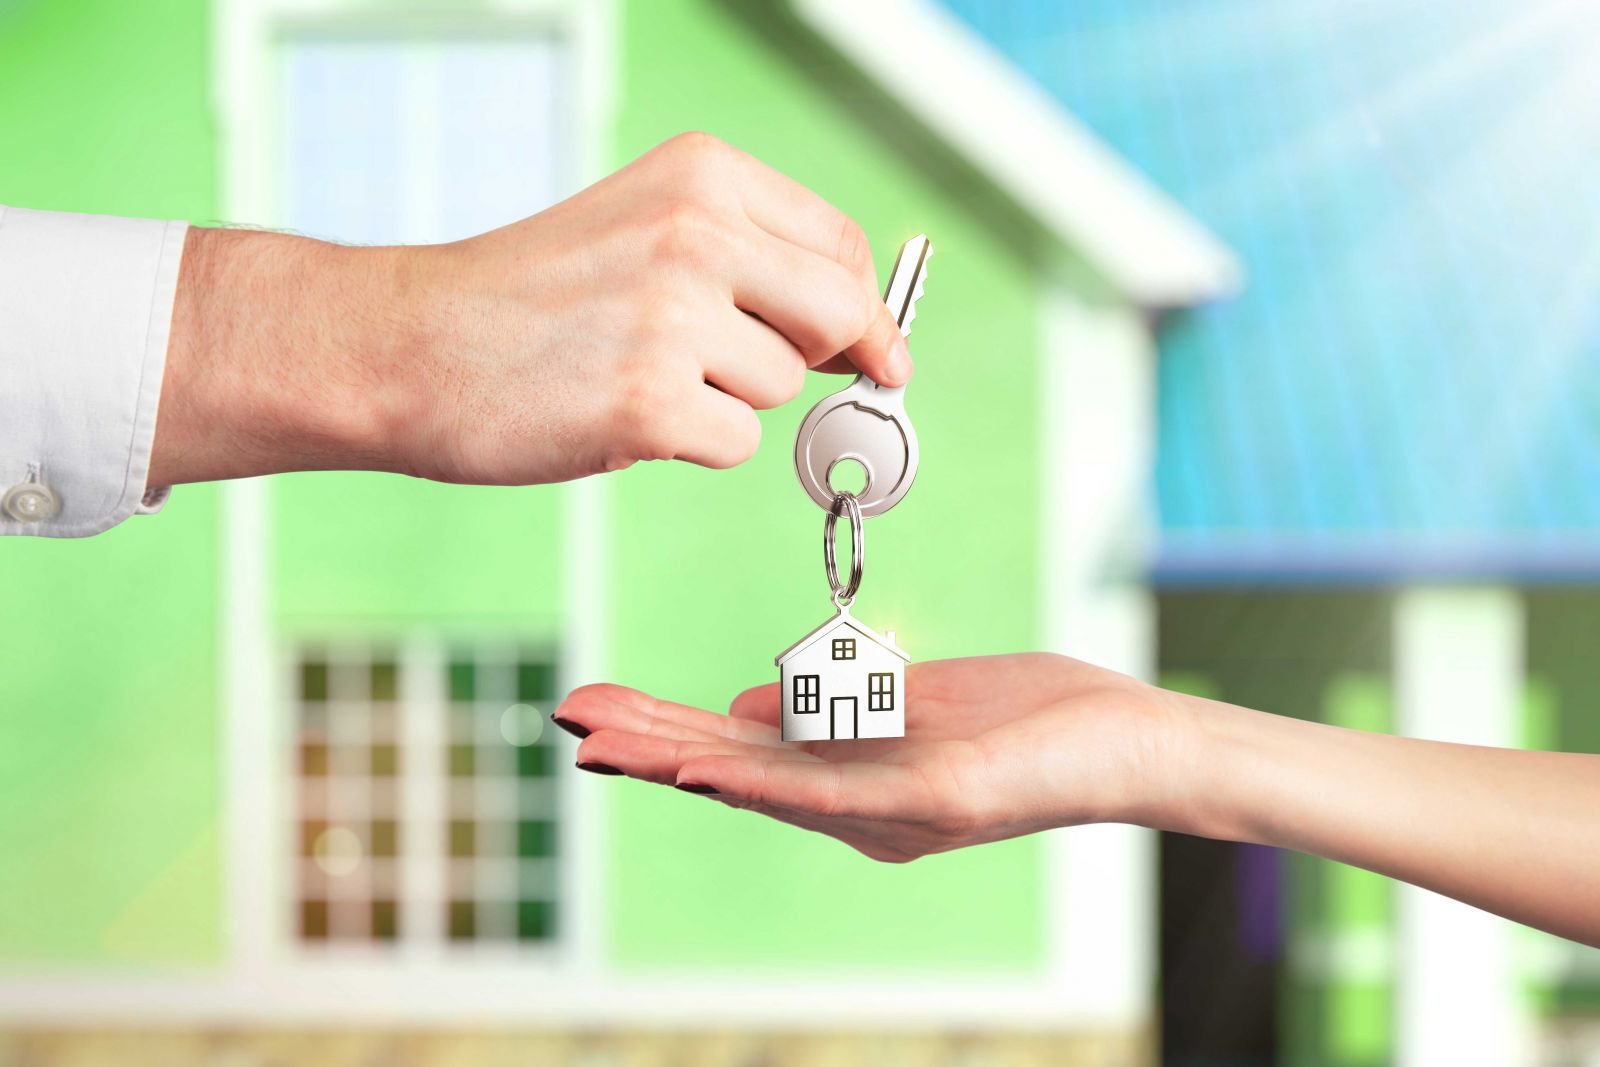 Закон об ипотеке, 102-ФЗ Об ипотеке и залоге недвижимости, последние изменения действующей редакции закона об ипотечном кредитовании